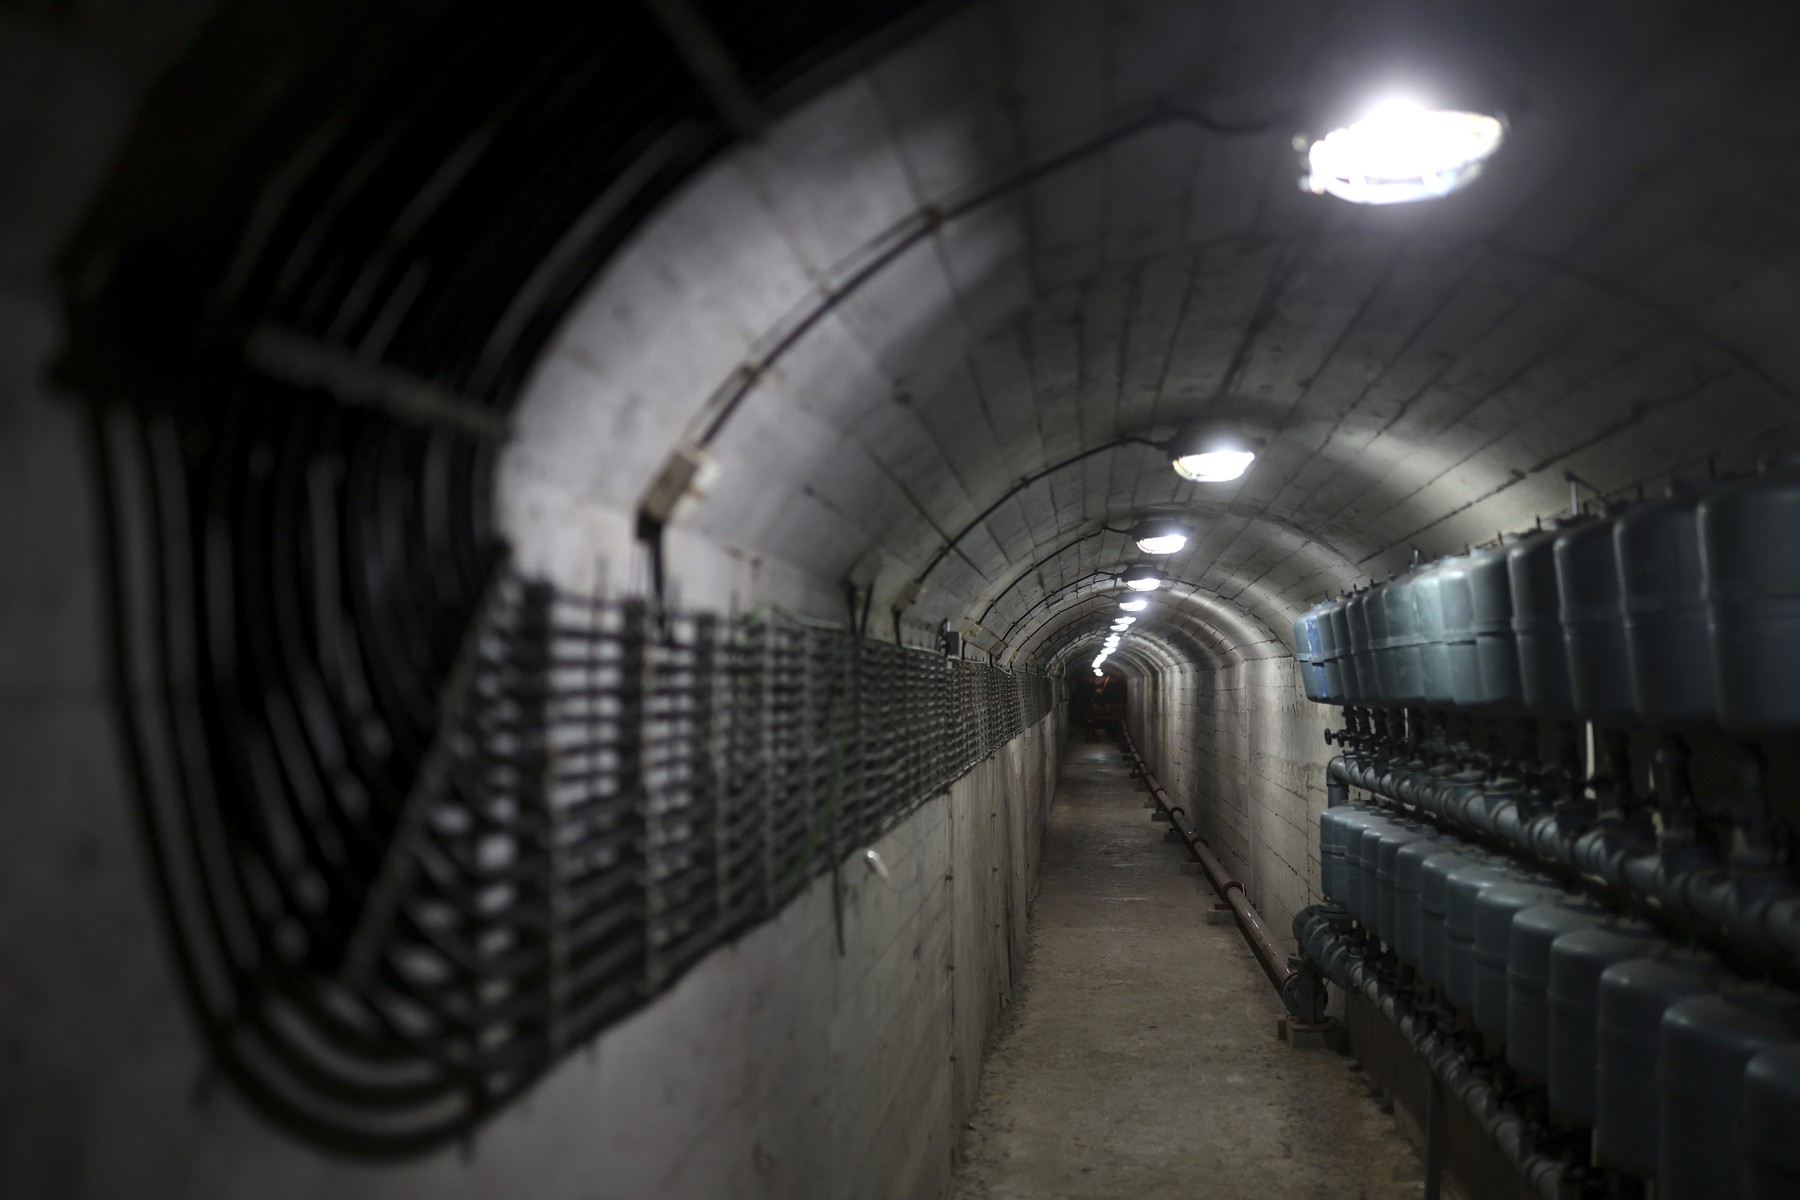 Kinyitották a Budai Vár alatti titkos atombunkert, szenvedések egész sorozata elevenedett meg a lezárt falak között